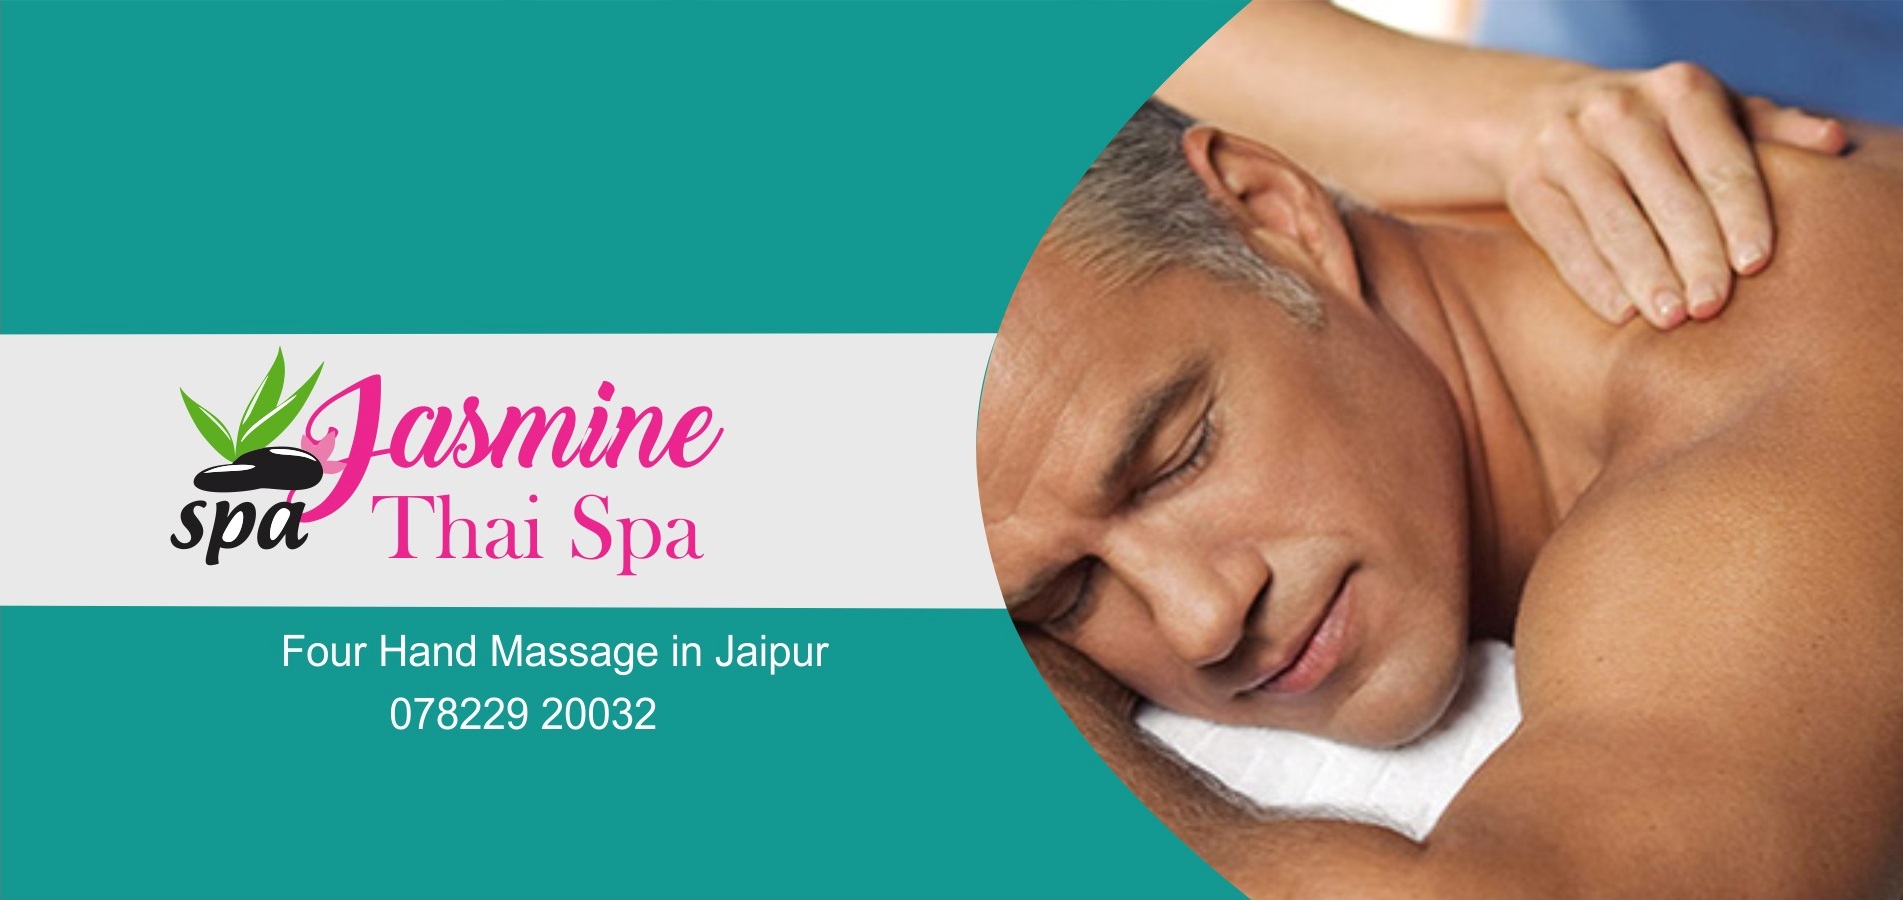 Four Hand Massage In Jaipur Jasmine Thai Spa Jaipur We Offer Four Hand Massage In Jaipur Body 9651